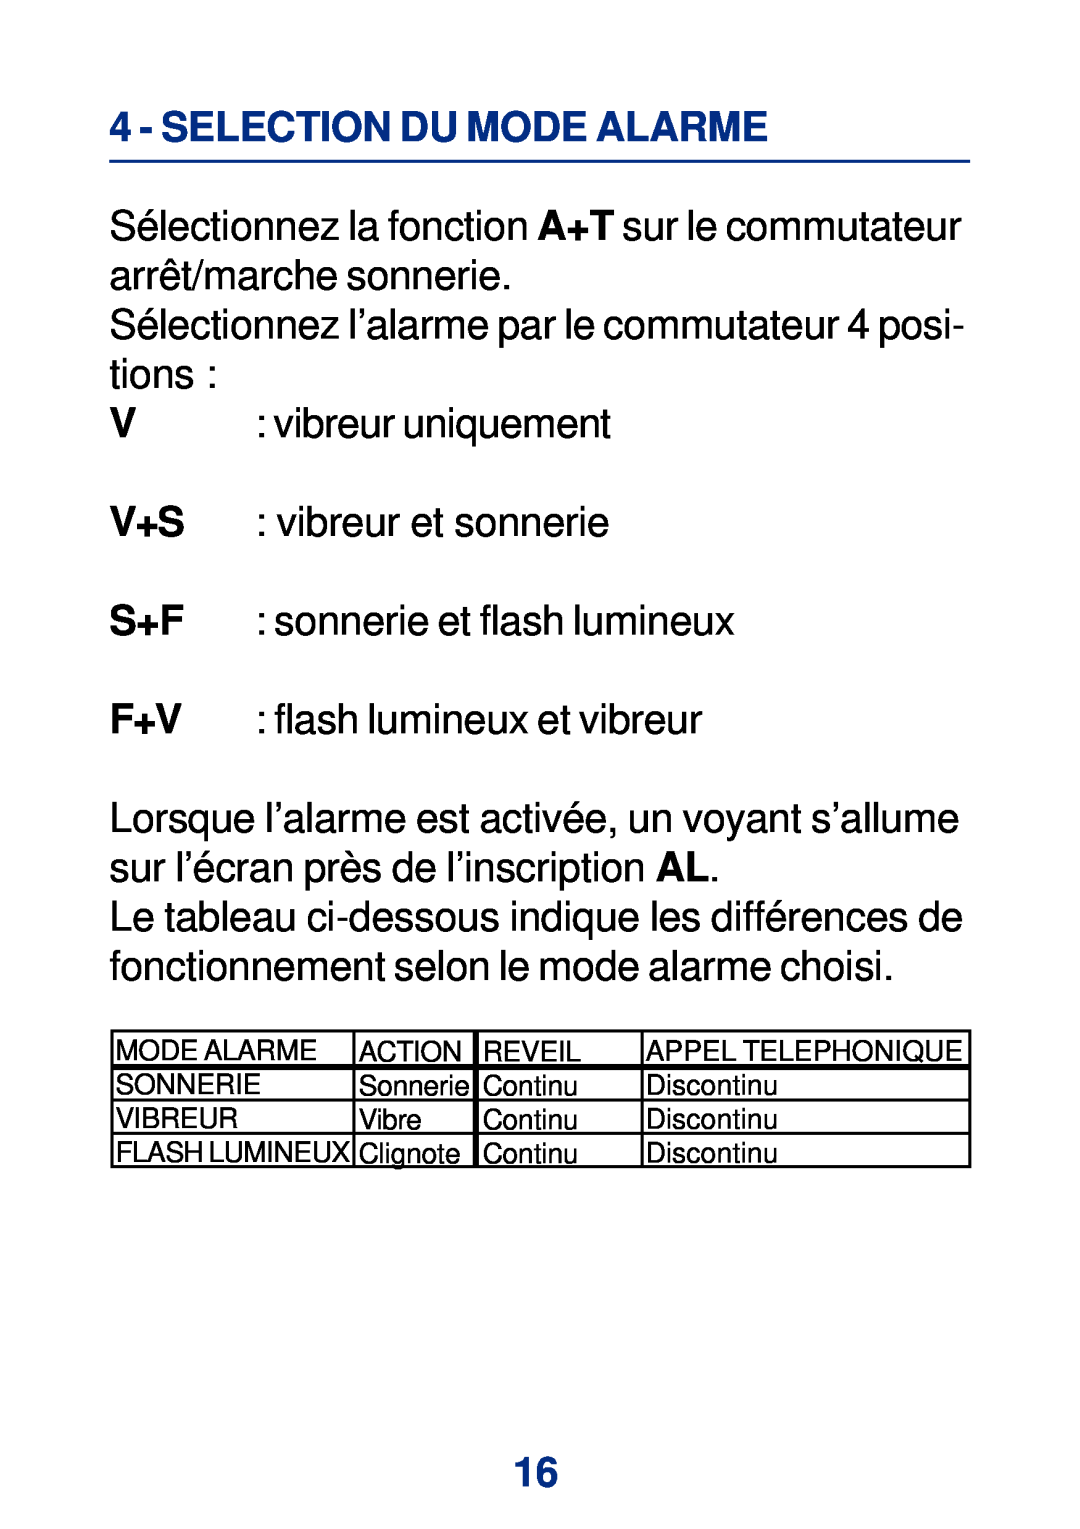 Geemarc Large Display Alarm Clock manual Selection Du Mode Alarme, V+S S+F F+V 